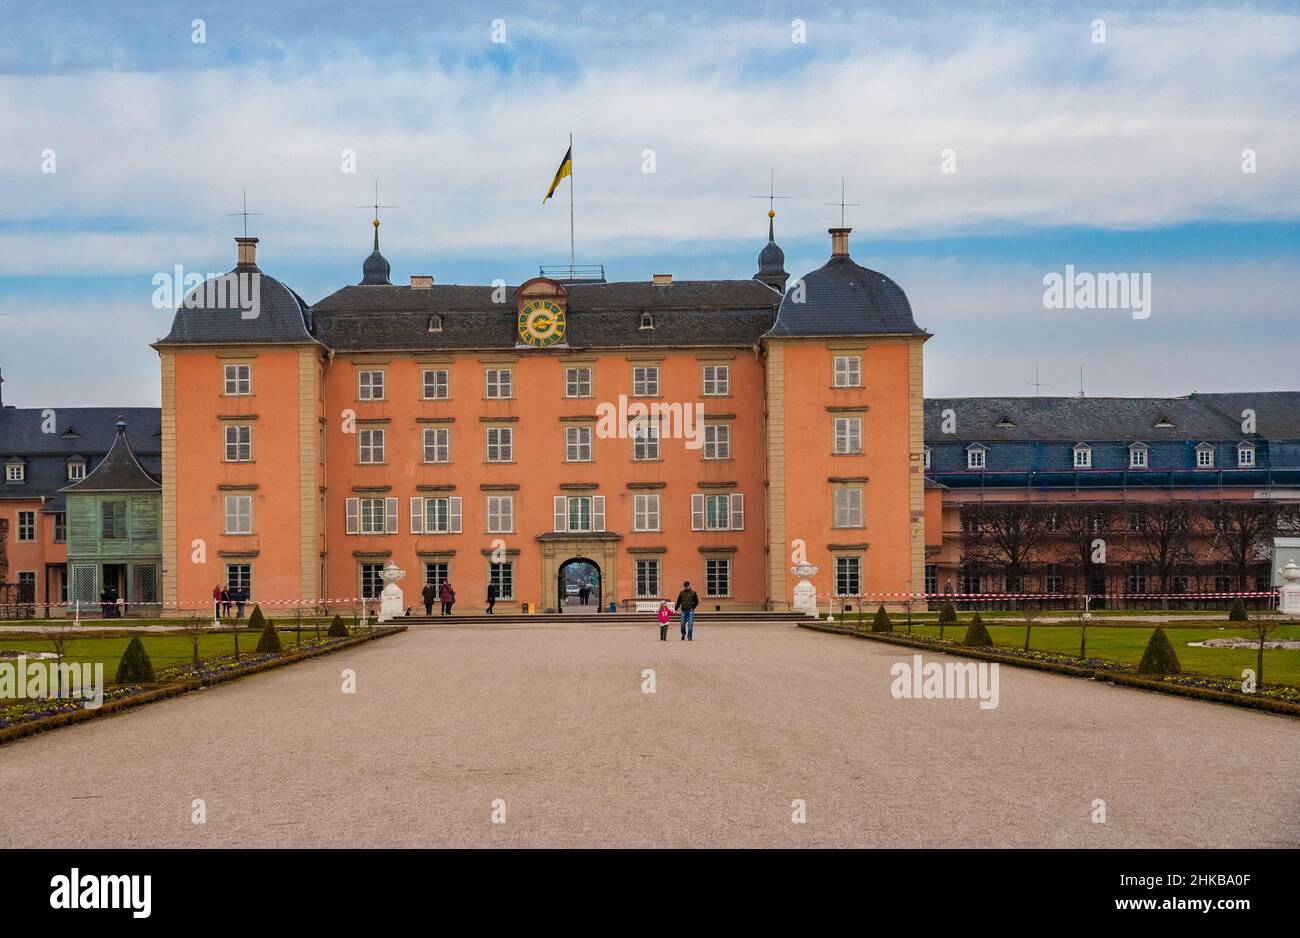 Schöne Aussicht auf das Hauptgebäude des berühmten Schlosses Schwetzingen vom Landschaftspark im englischen Stil. Seine heutige Form verdankt der Palast dem... Stockfoto